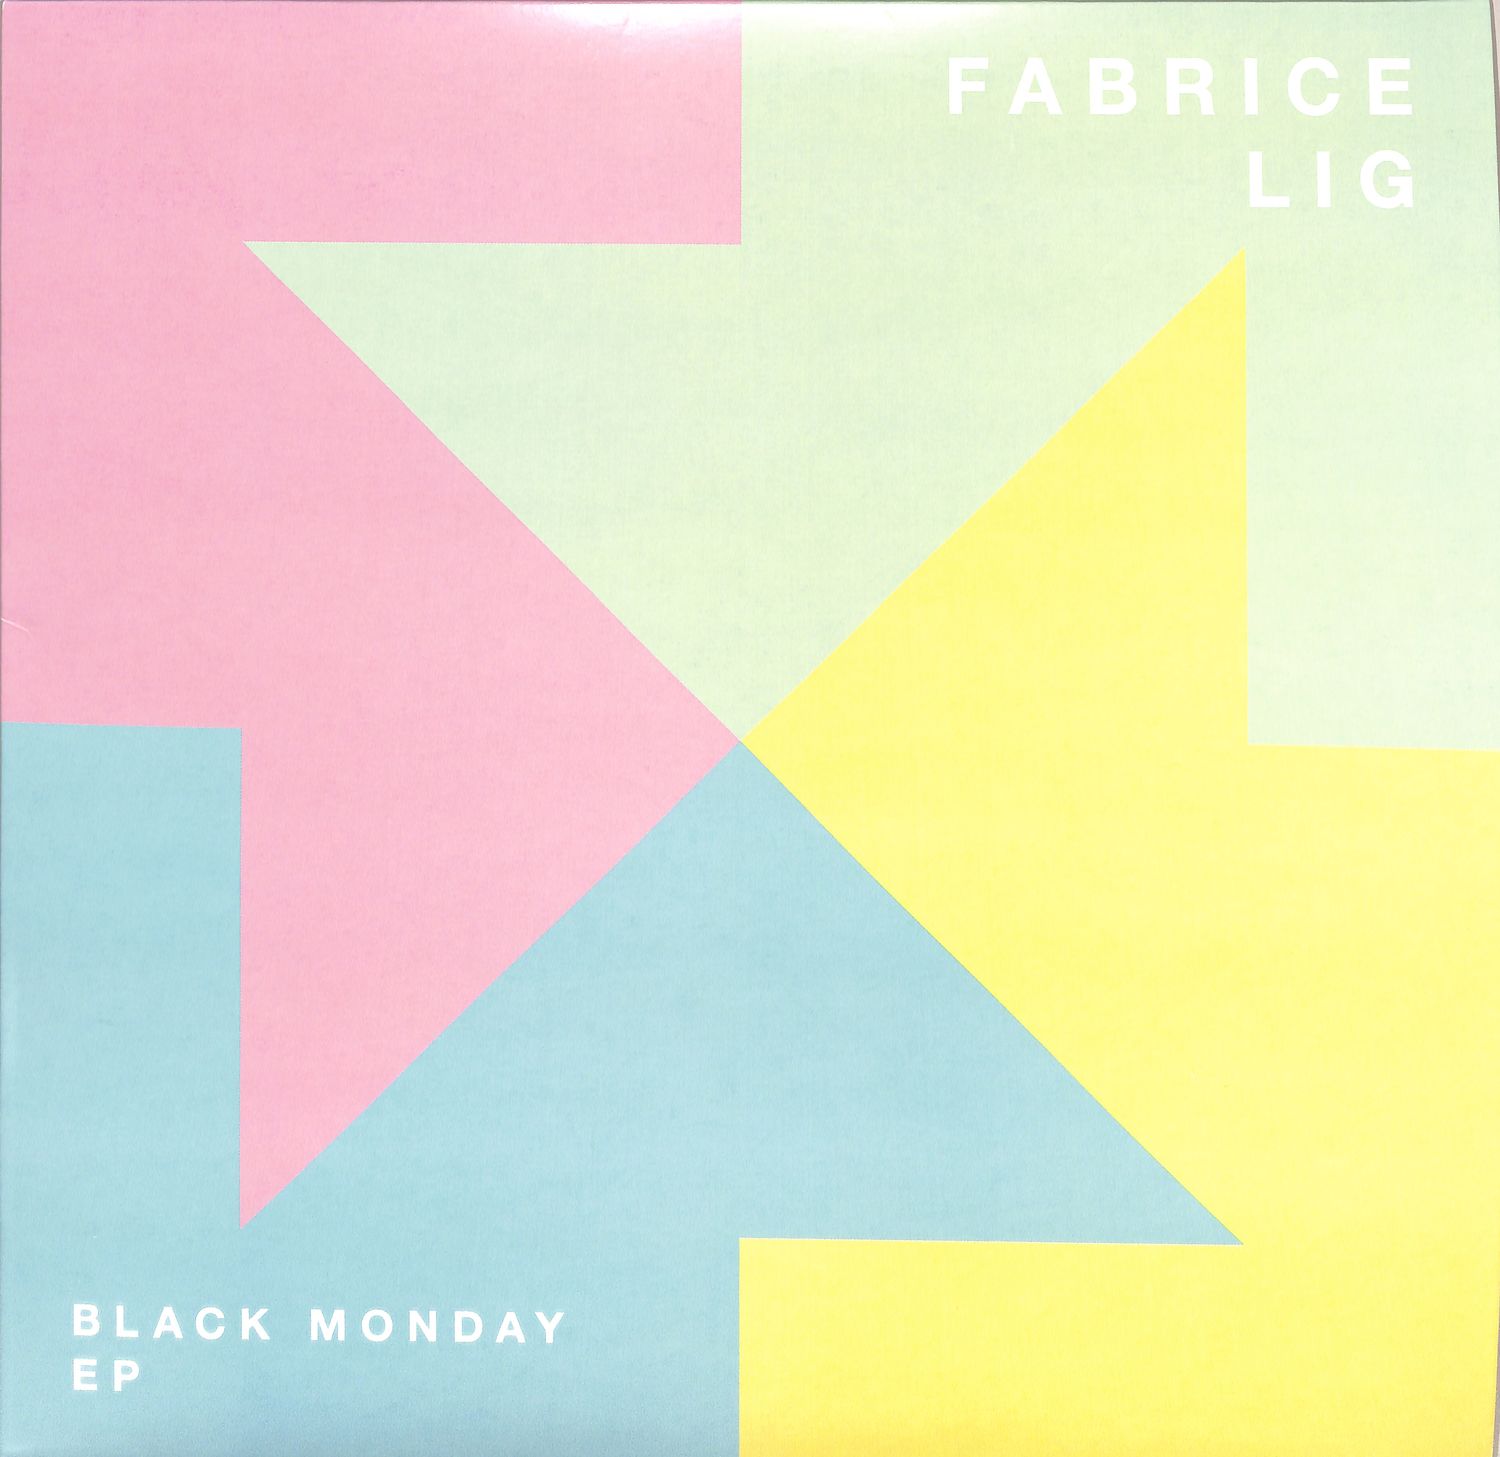 Fabrice Lig - BLACK MONDAY EP